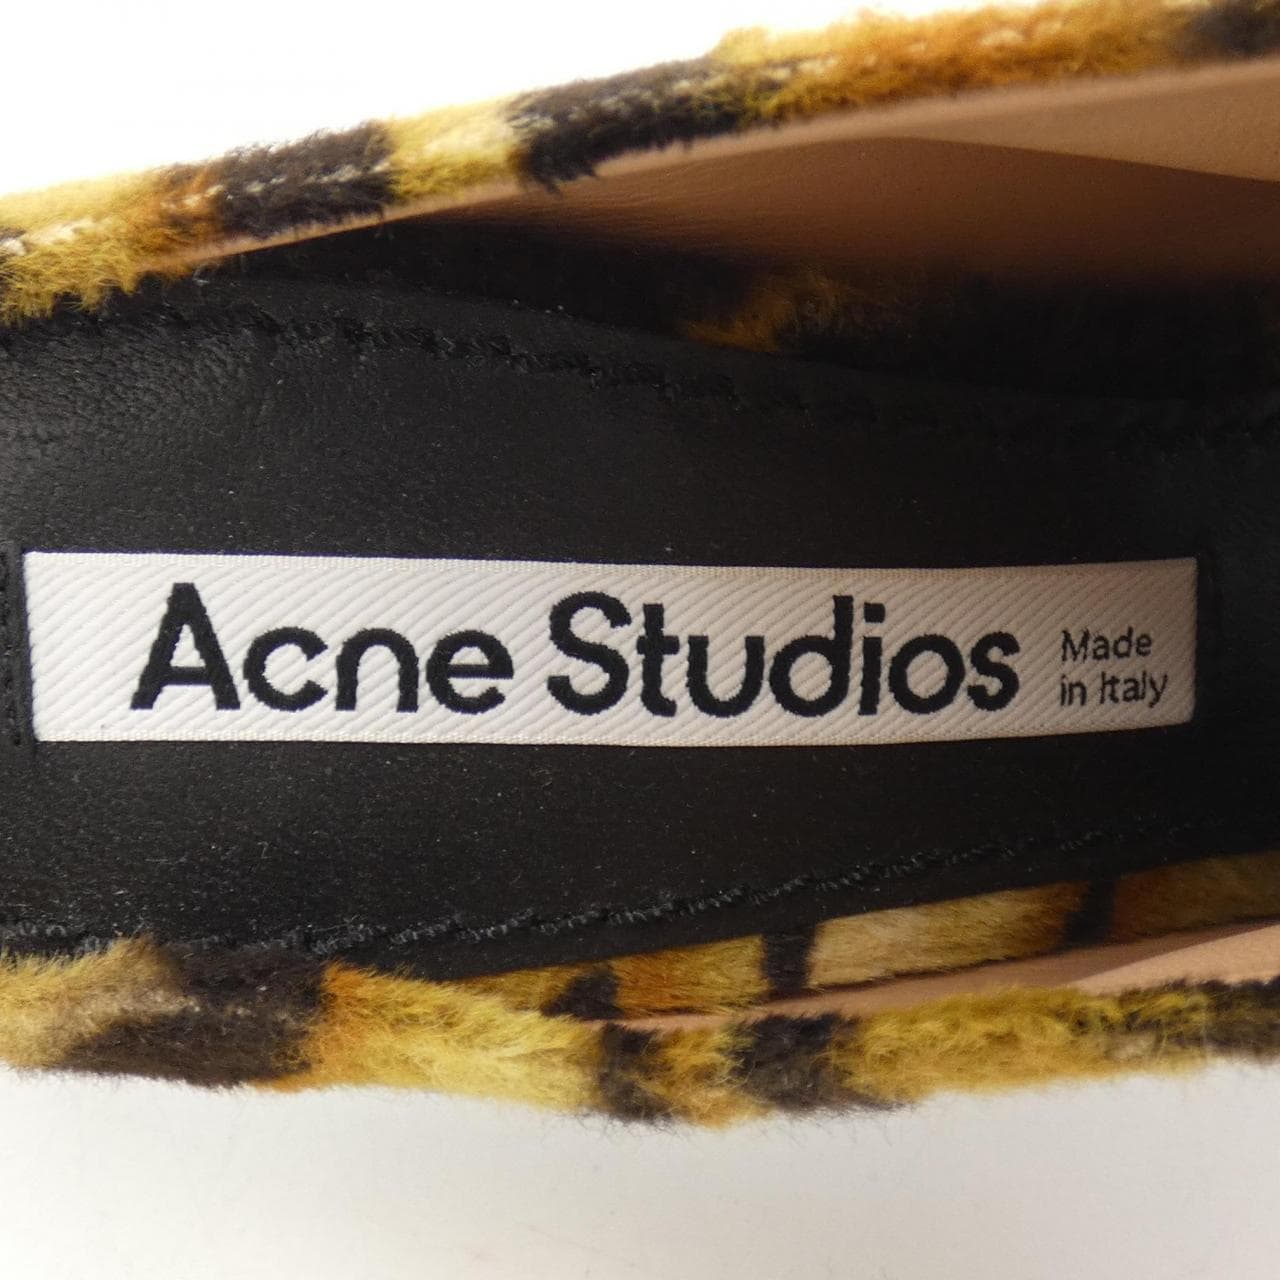 ACNE STUDIOS shoes